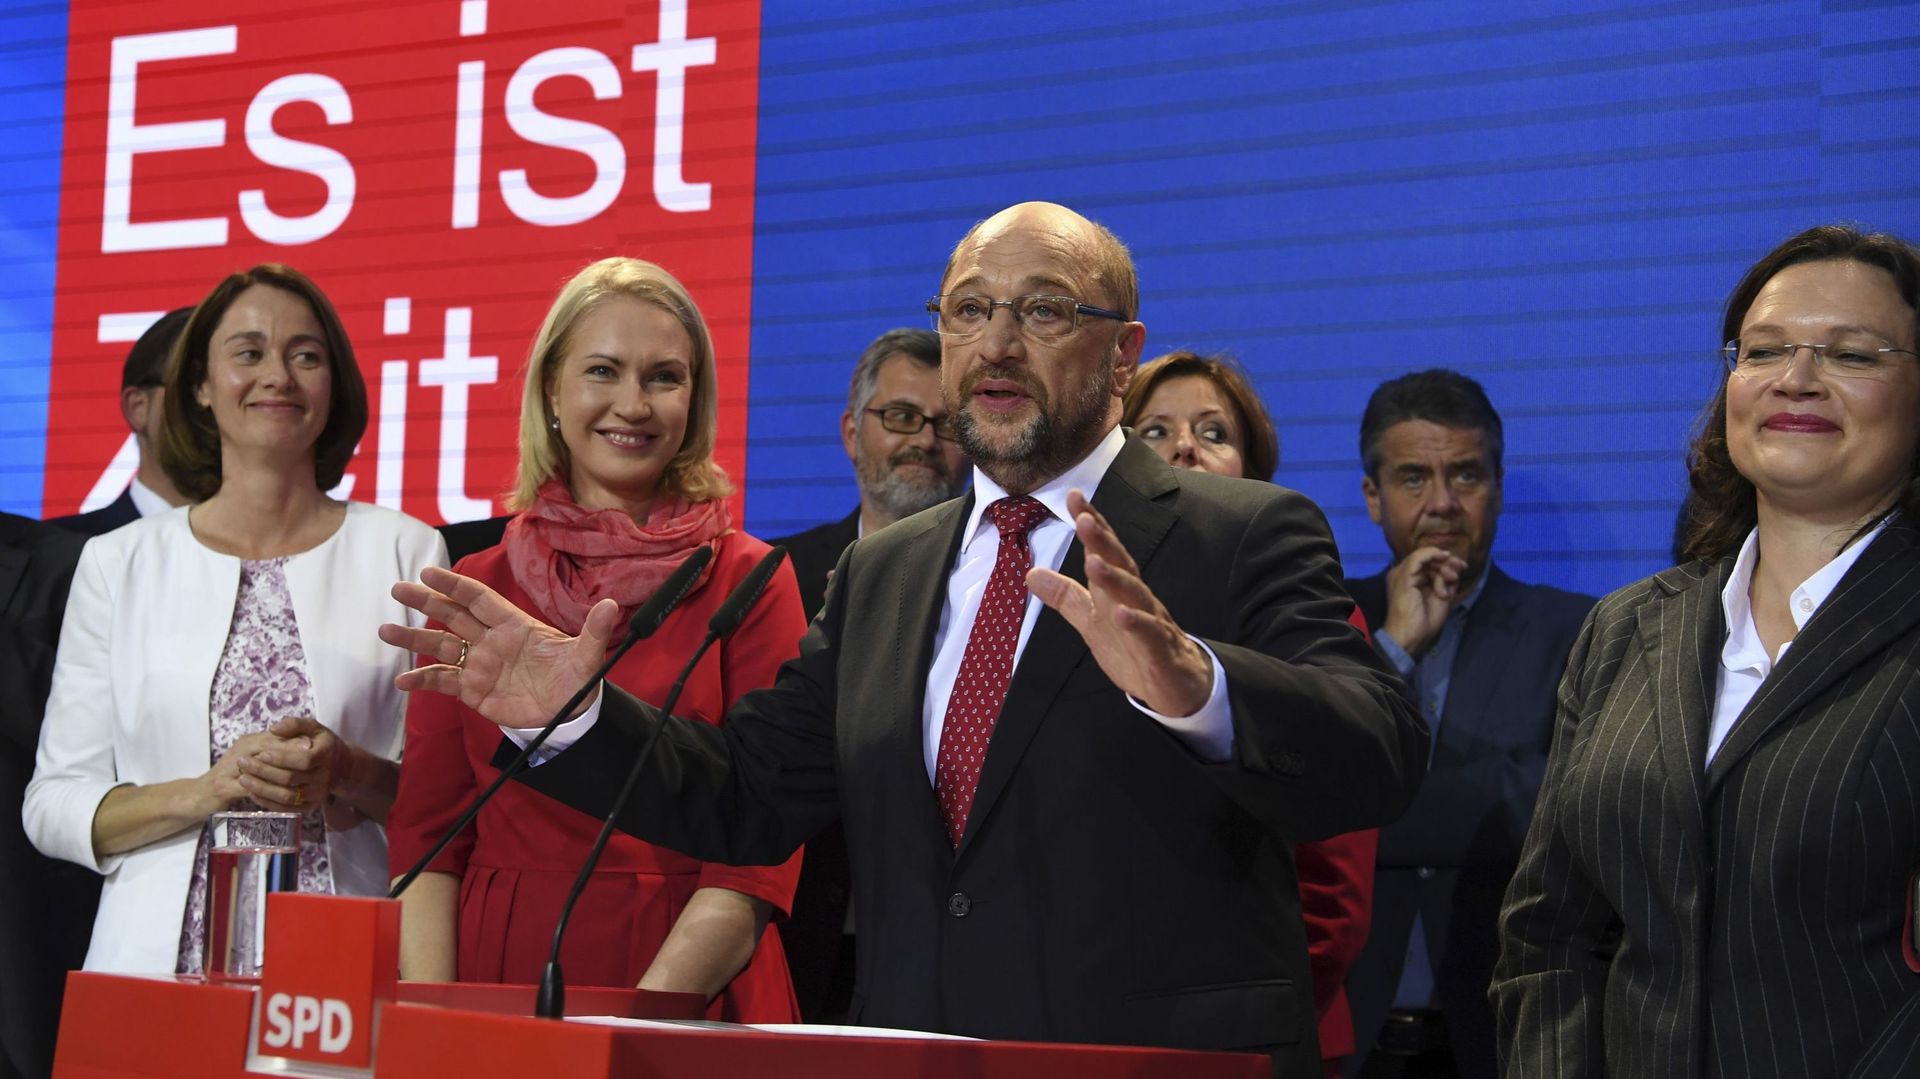 Après leur résultat difficile et amer", les sociaux-démocrates refusent de gouverner avec Merkel